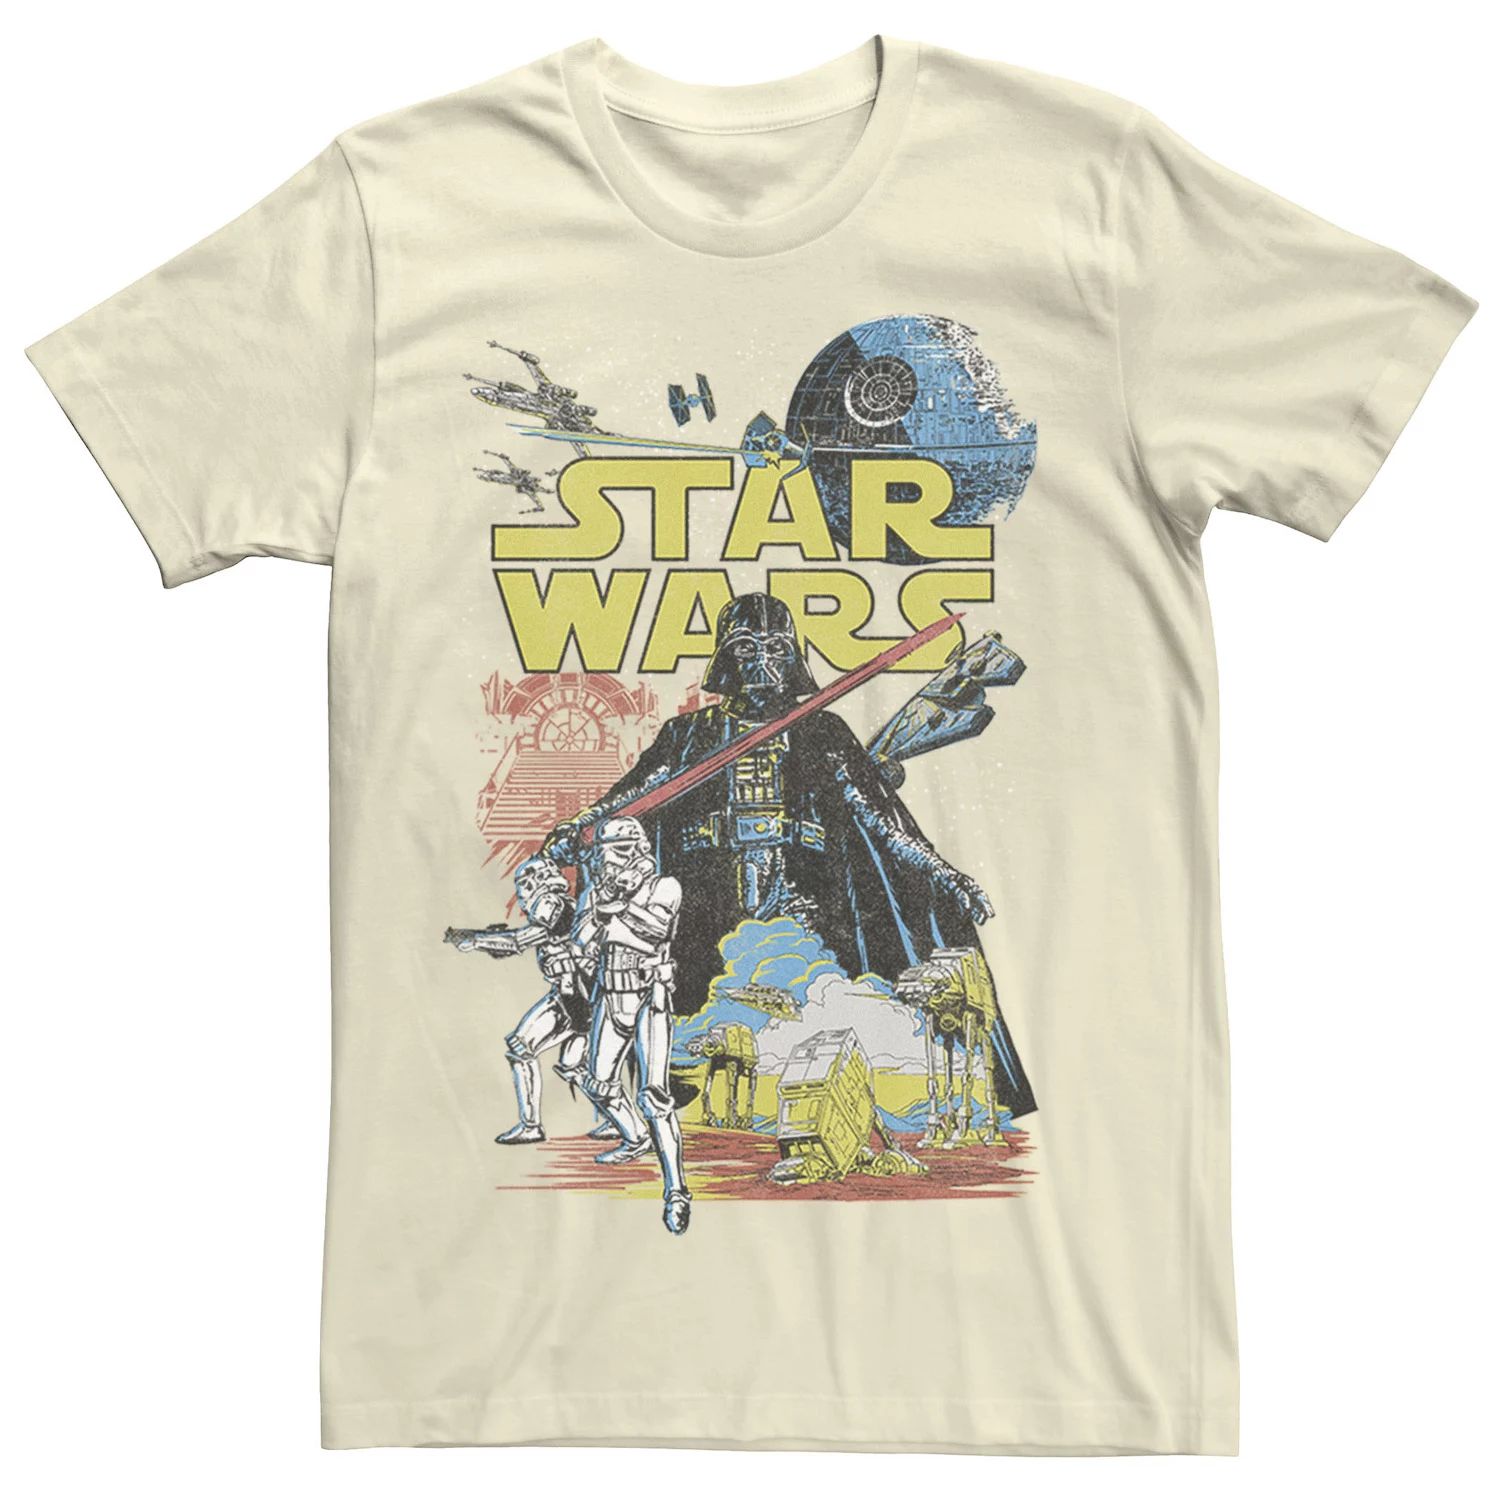 Мужская классическая футболка с плакатом и рисунком Rebel Star Wars мужская классическая футболка с графическим плакатом rebel white star wars белый